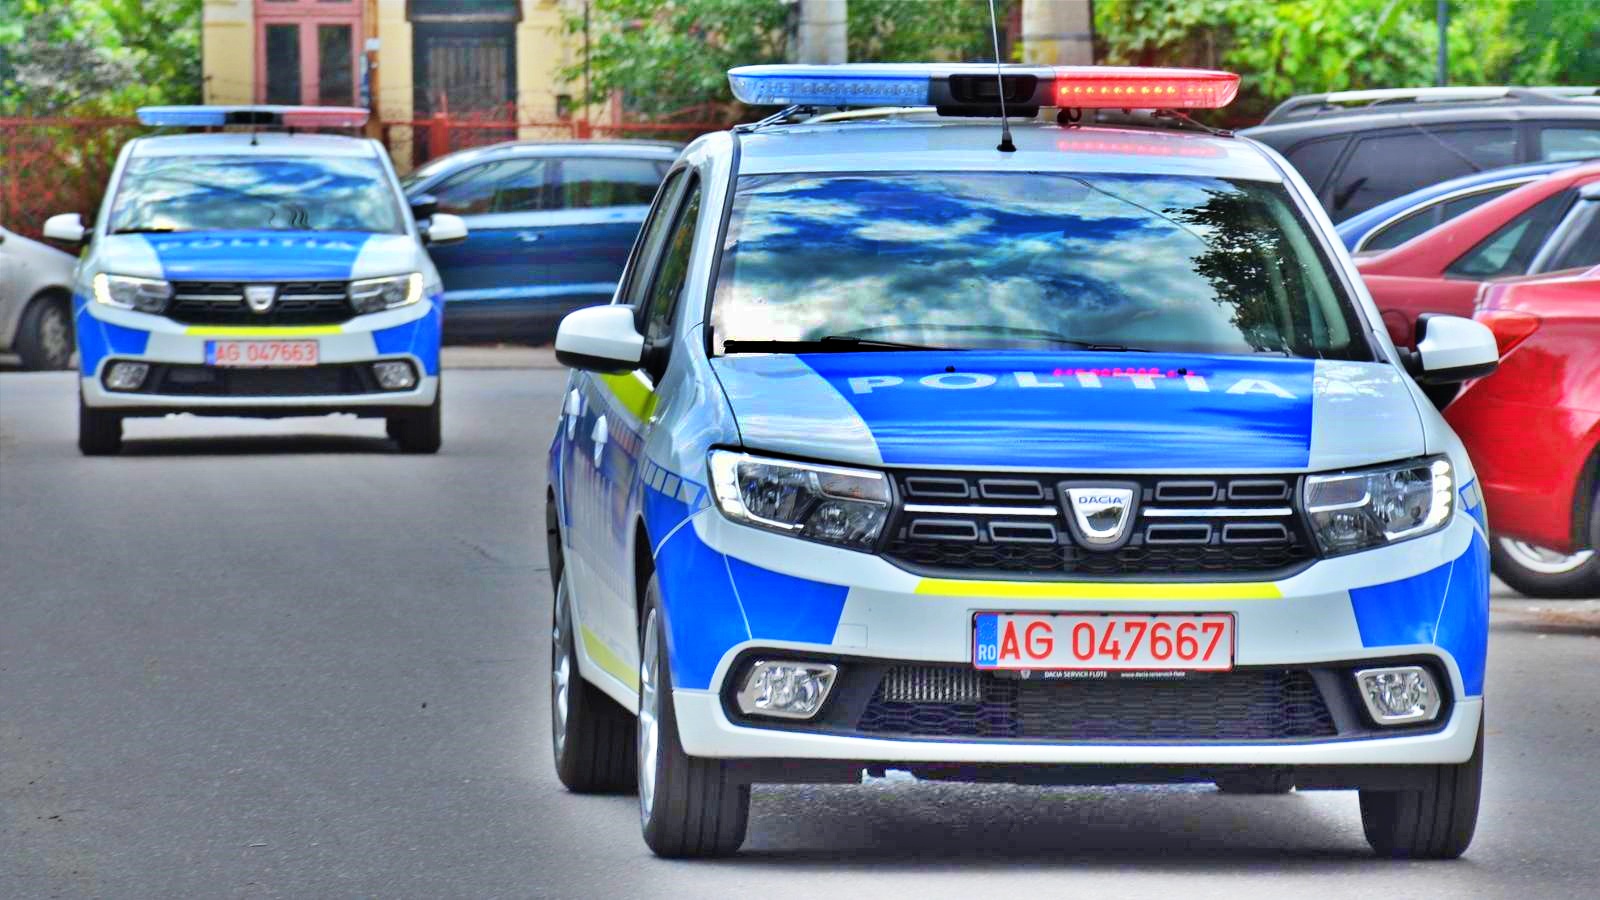 Det rumænske politis anbefaling om at hjælpe børn